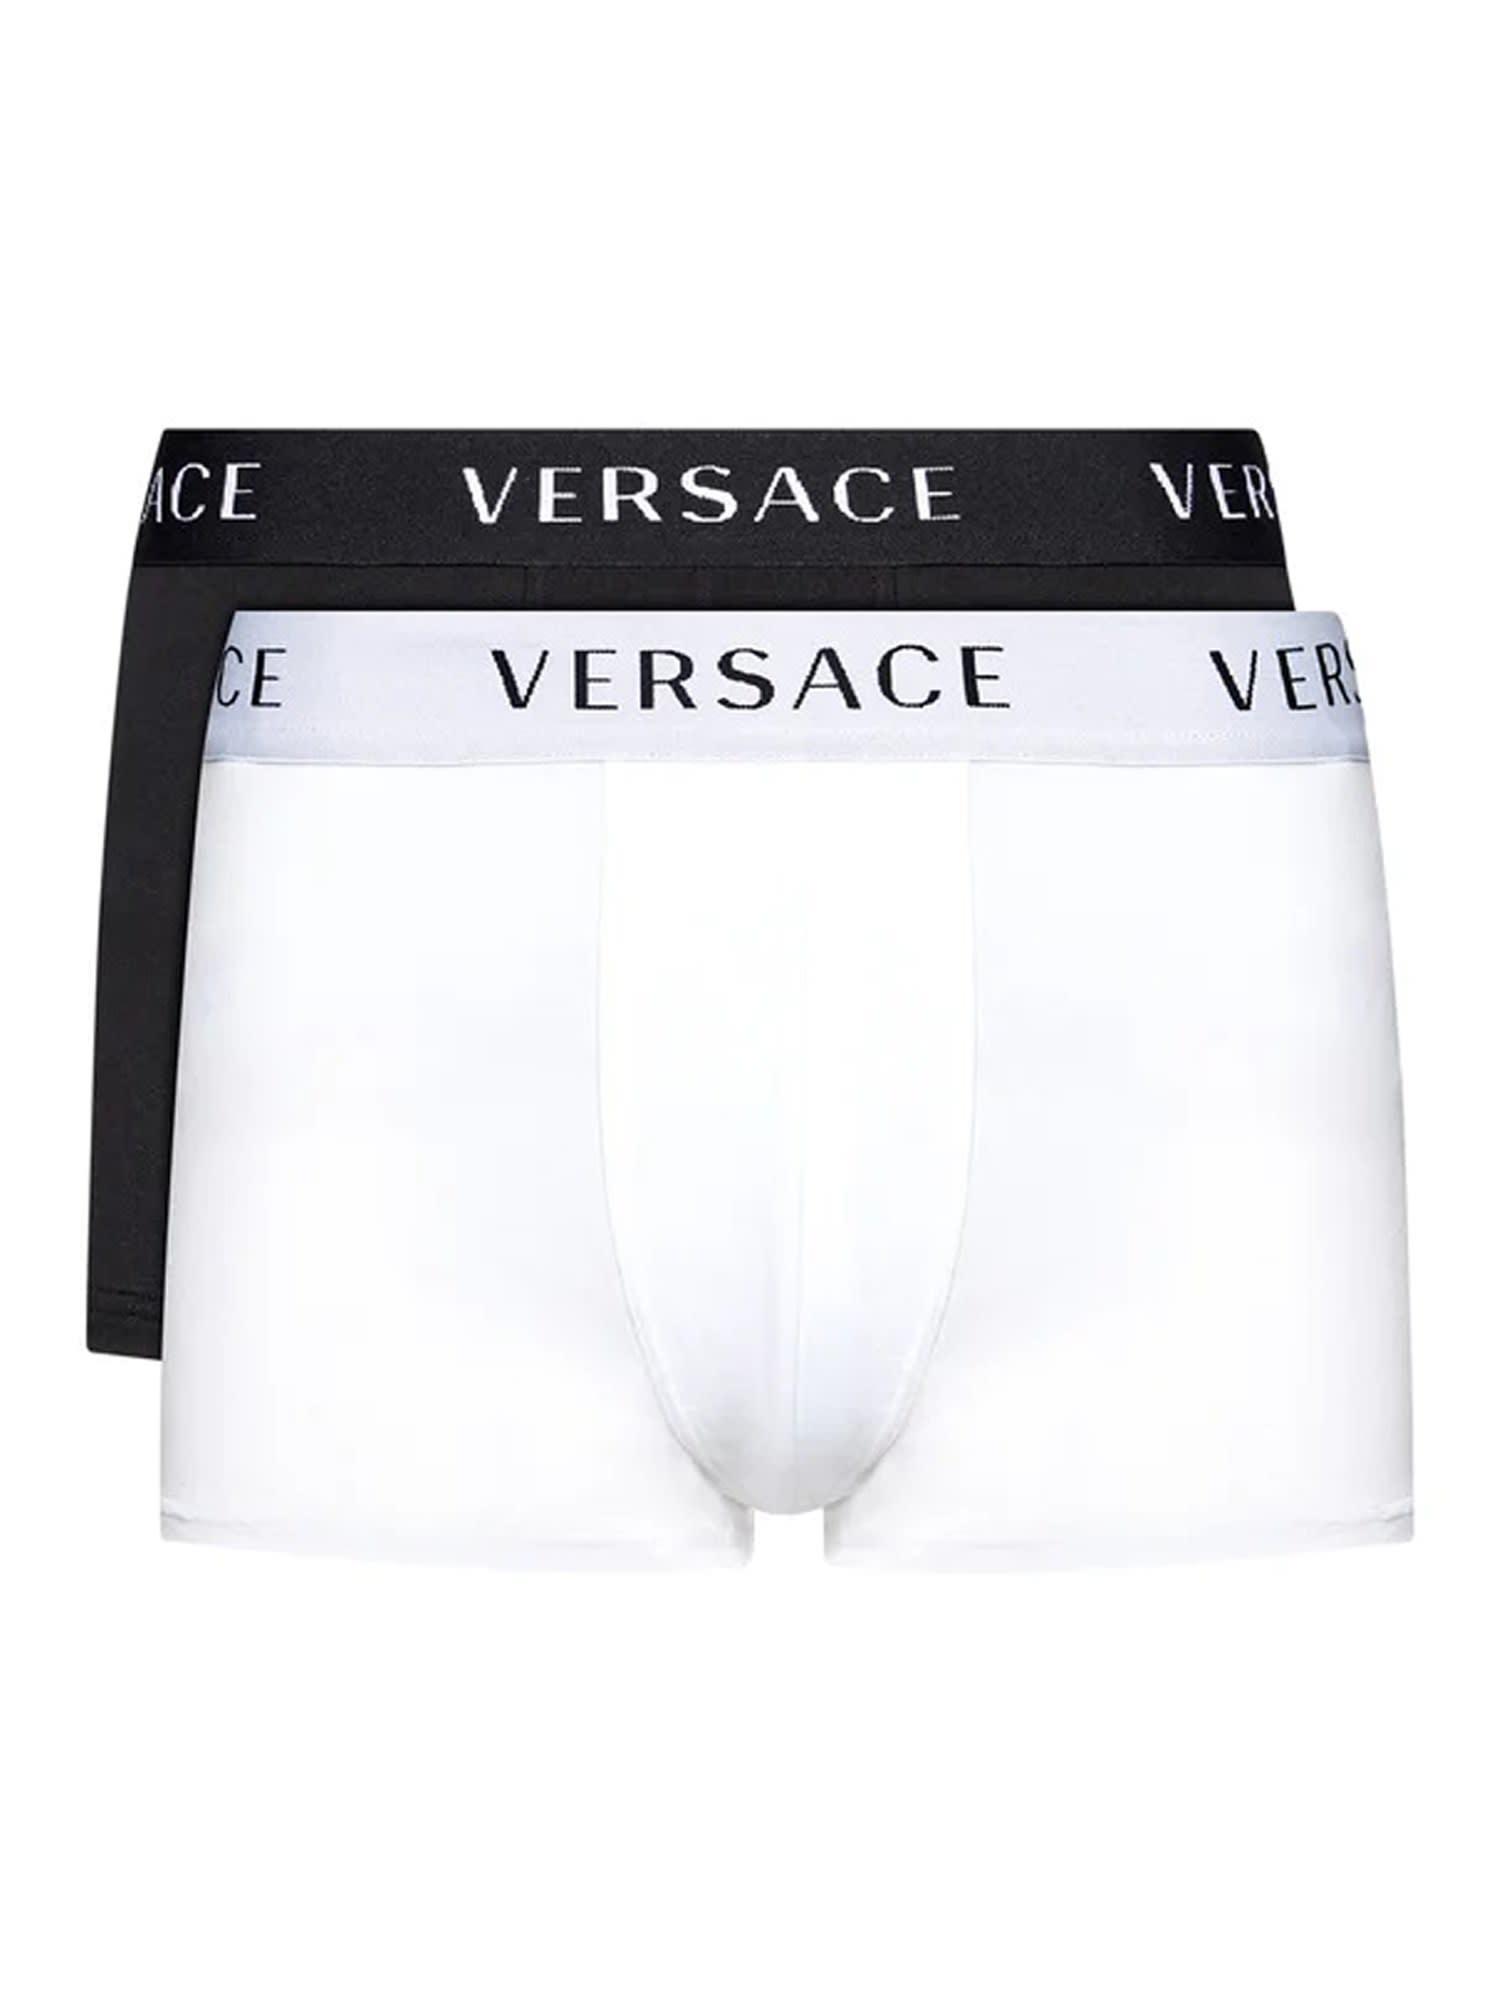 Versace Cotton Underwear White for Men Mens Underwear Versace Underwear Save 6% 